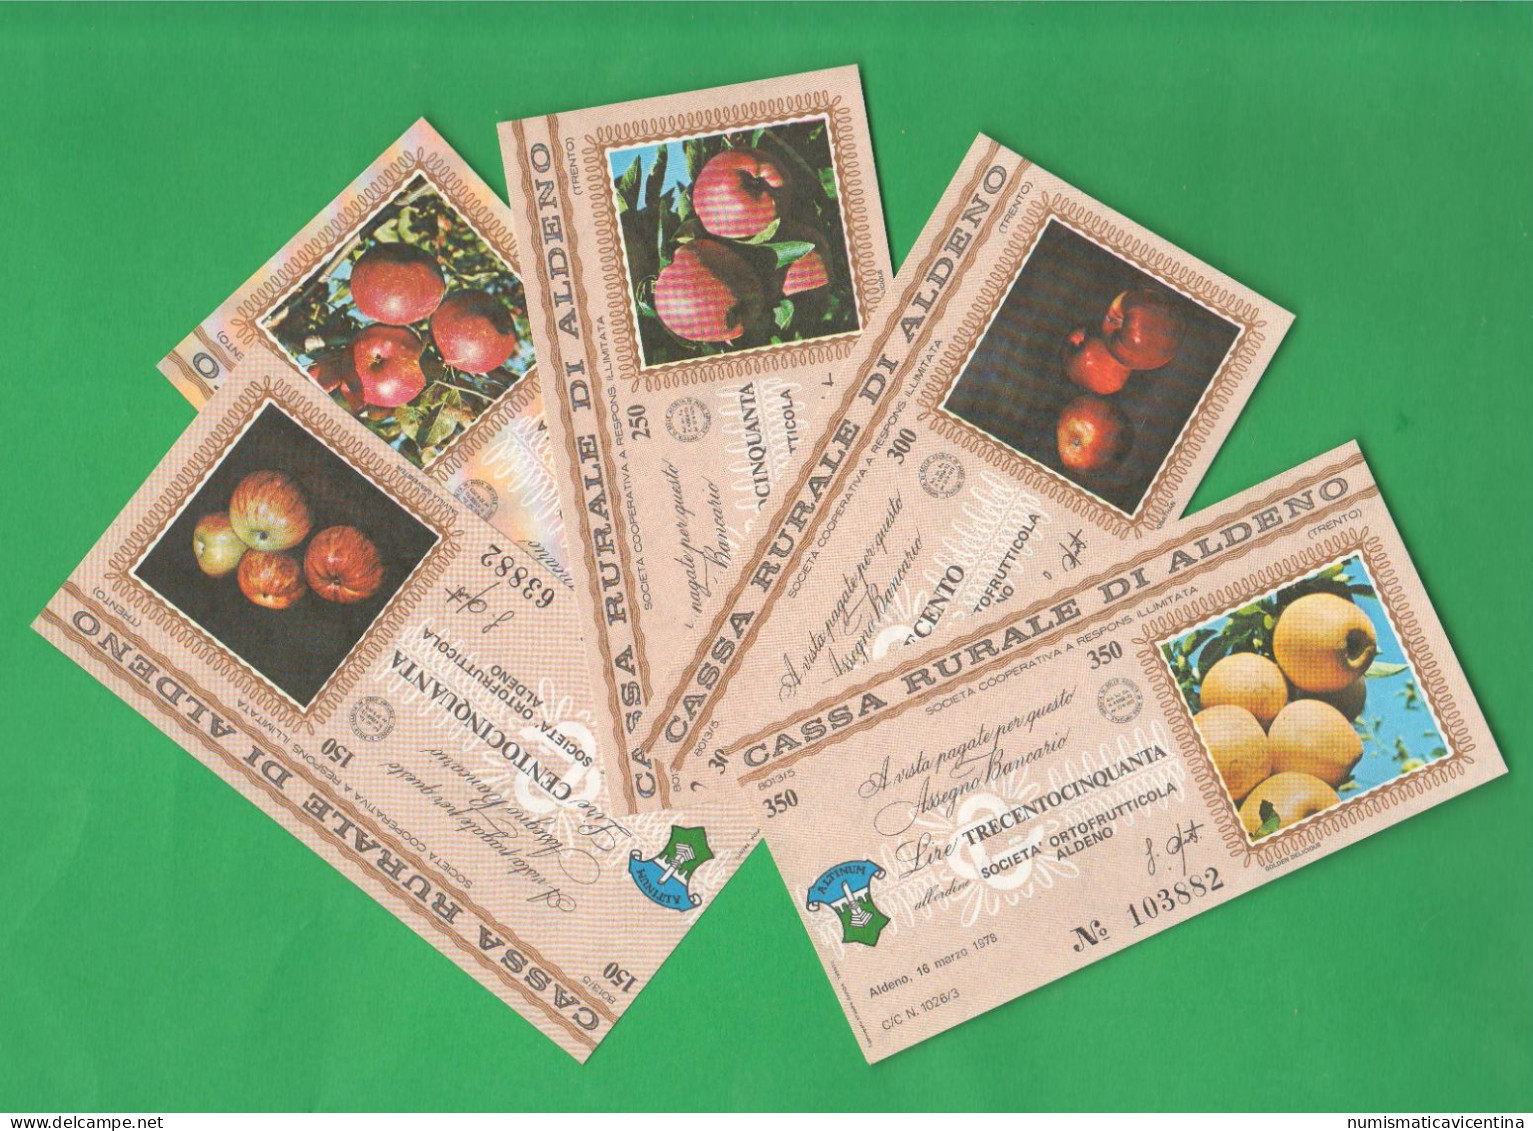 Trento Aldeno Cassa Rurale 5 Miniassegni 1978 Da 150 200 250 300 350 Lire Mele Apples Pommes - [10] Cheques En Mini-cheques